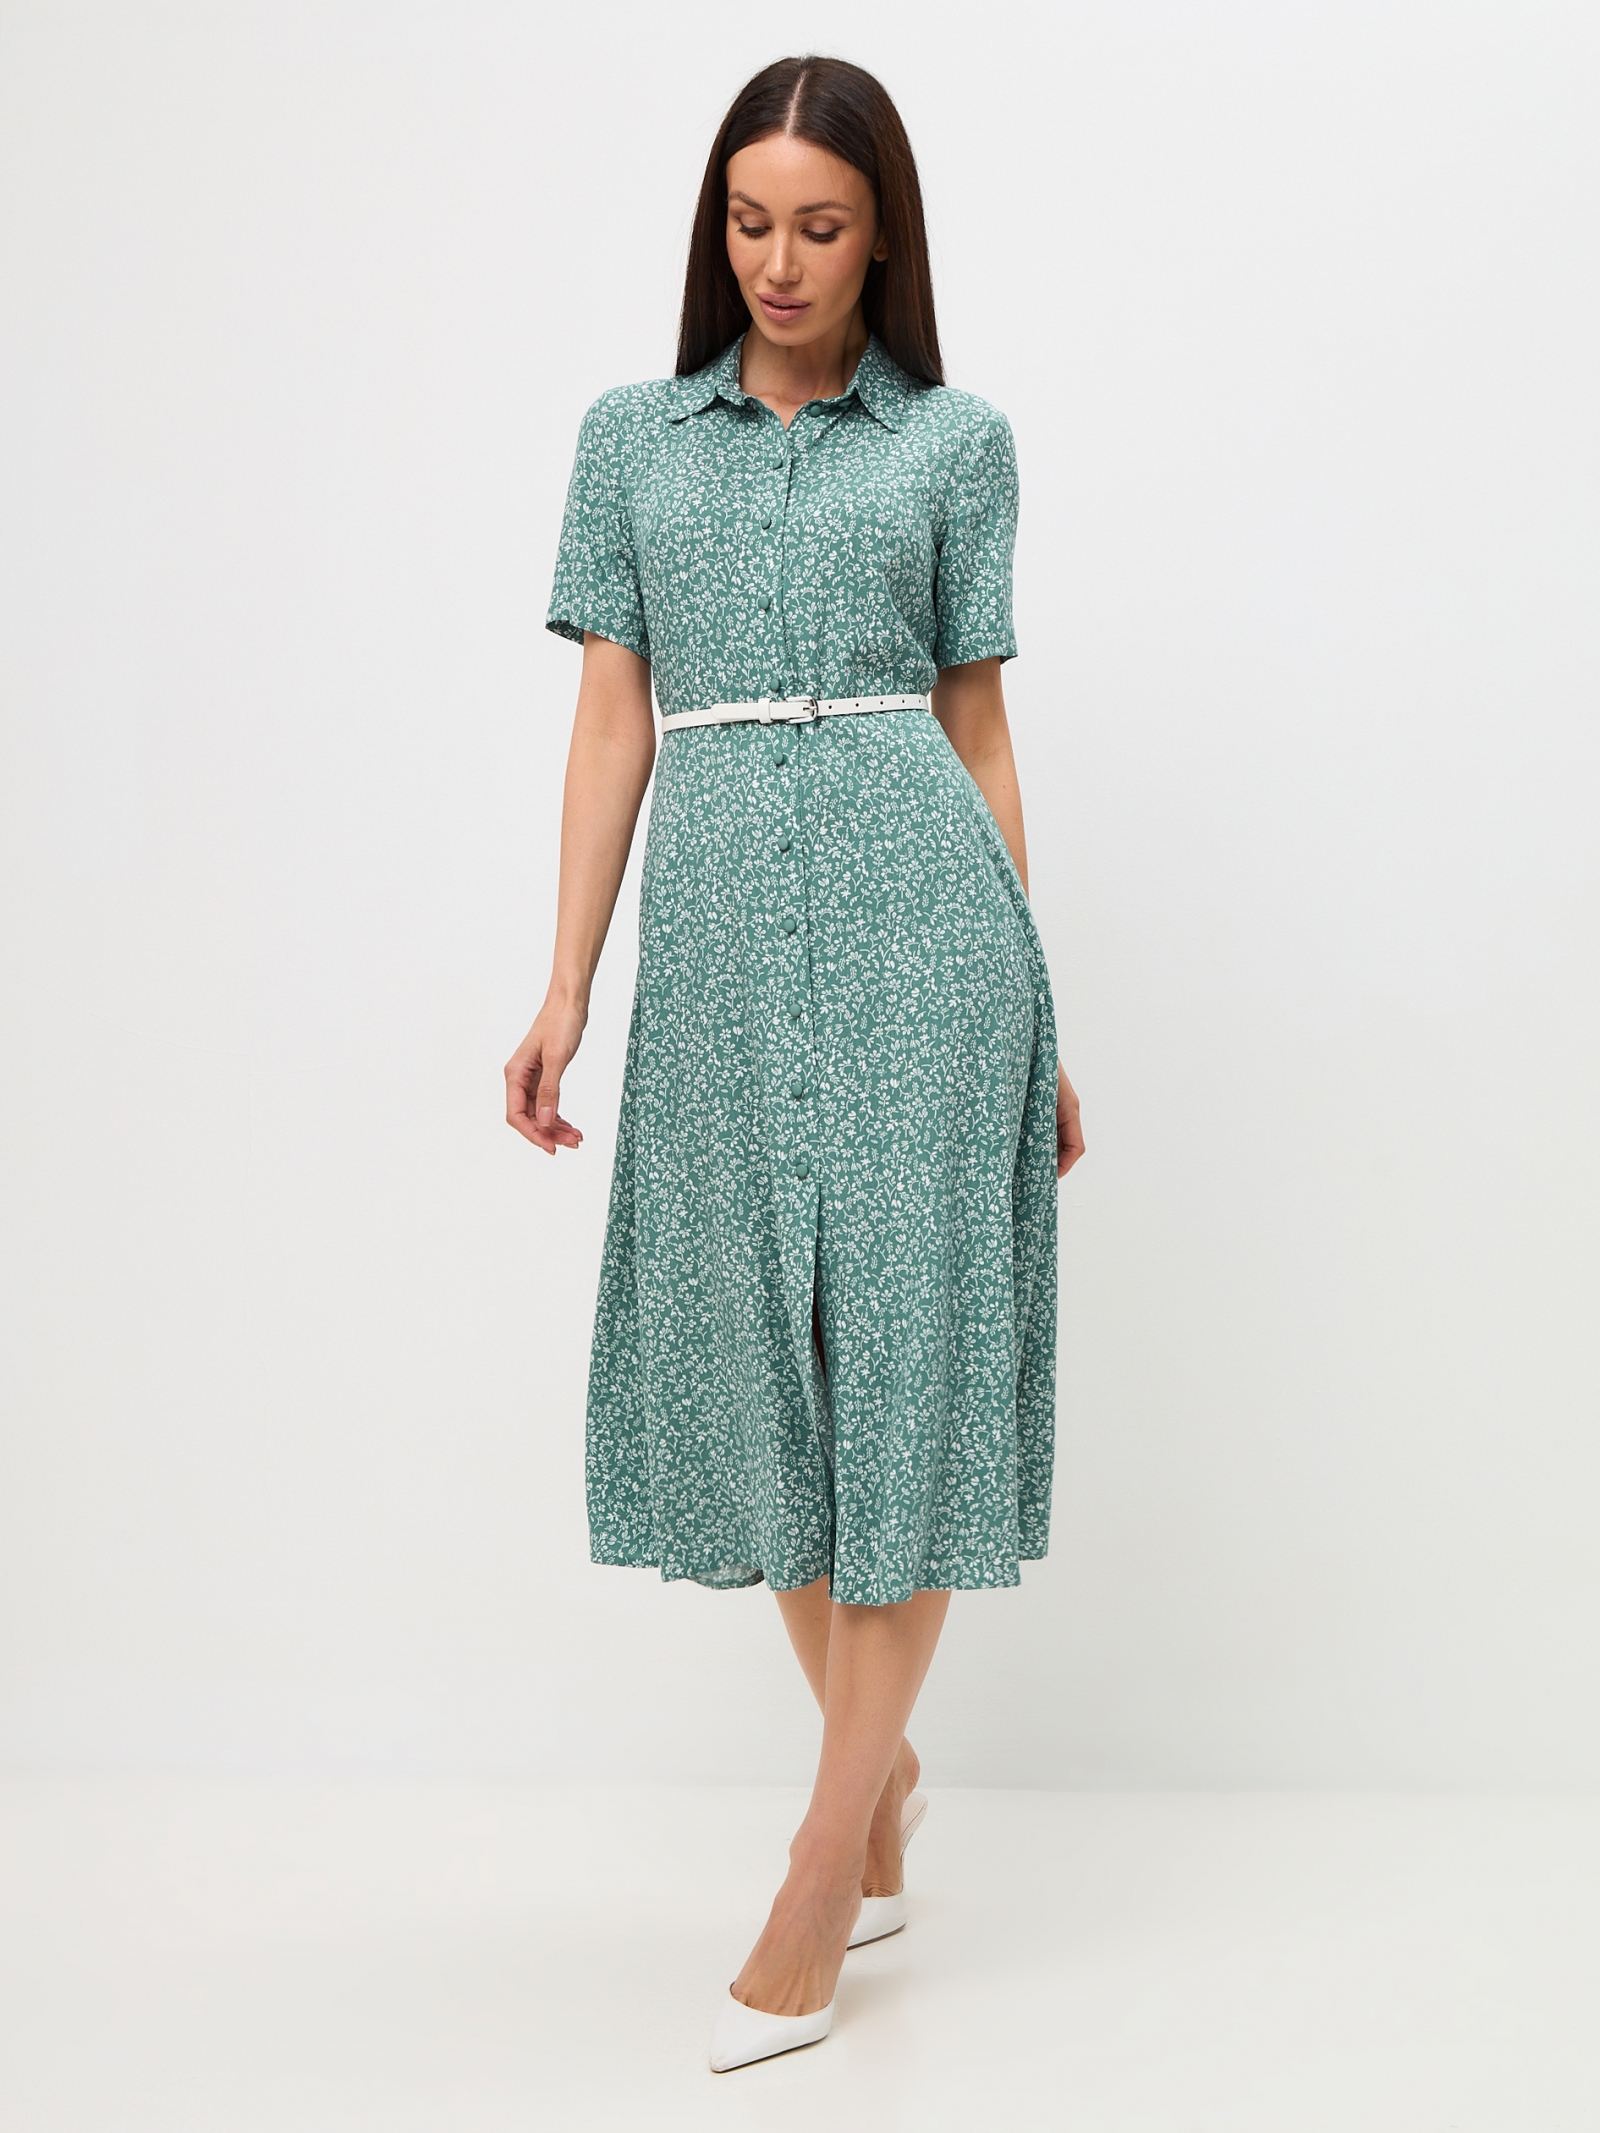 Платье-халат OD-873-3 веточки на зеленом